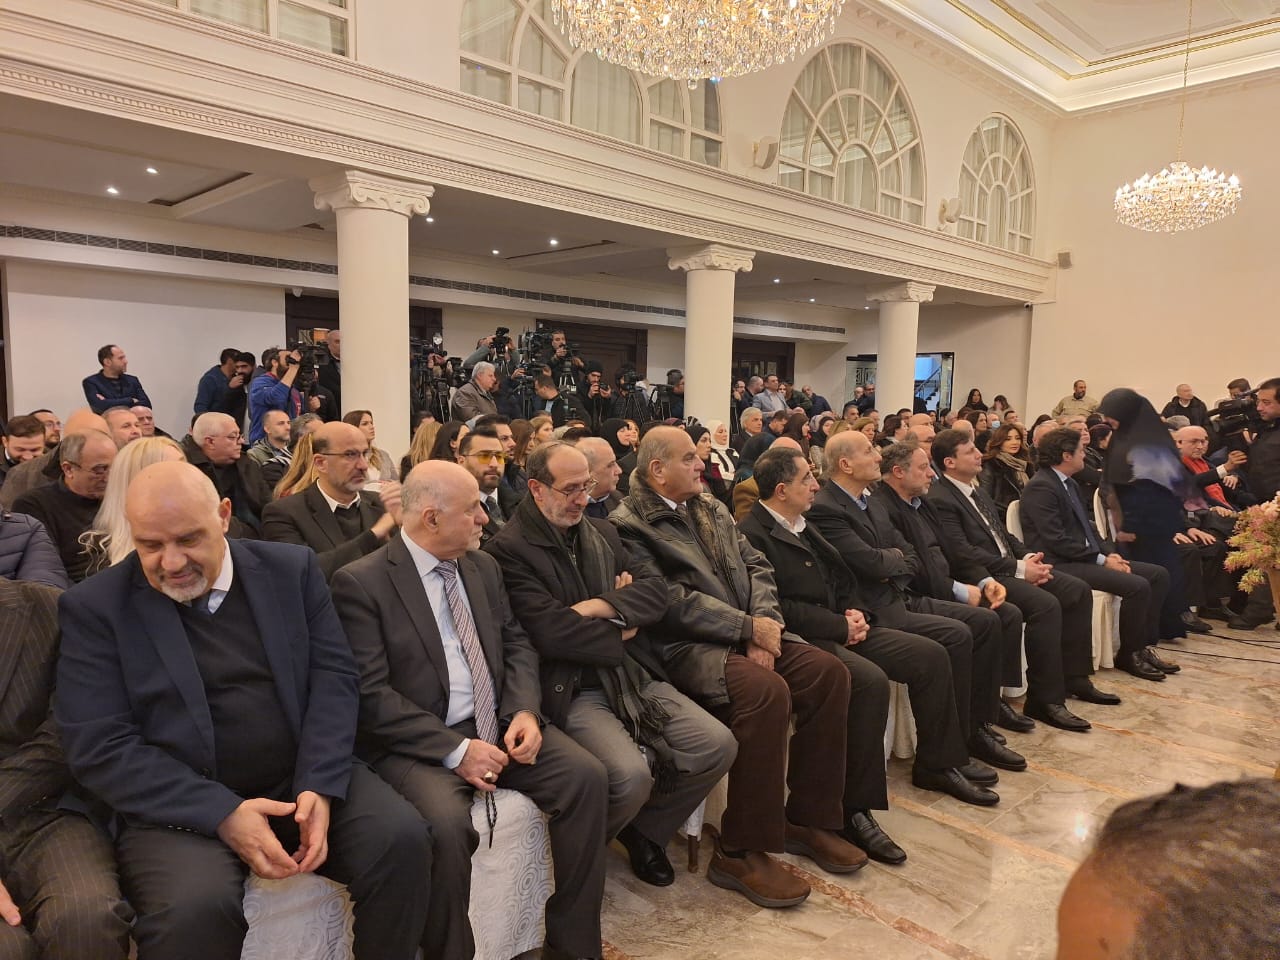 بالصور.. الحفل التكريمي الذي أقامته العلاقات الإعلامية في حزب الله بعنوان "إعلاميّون على طريق القدس"